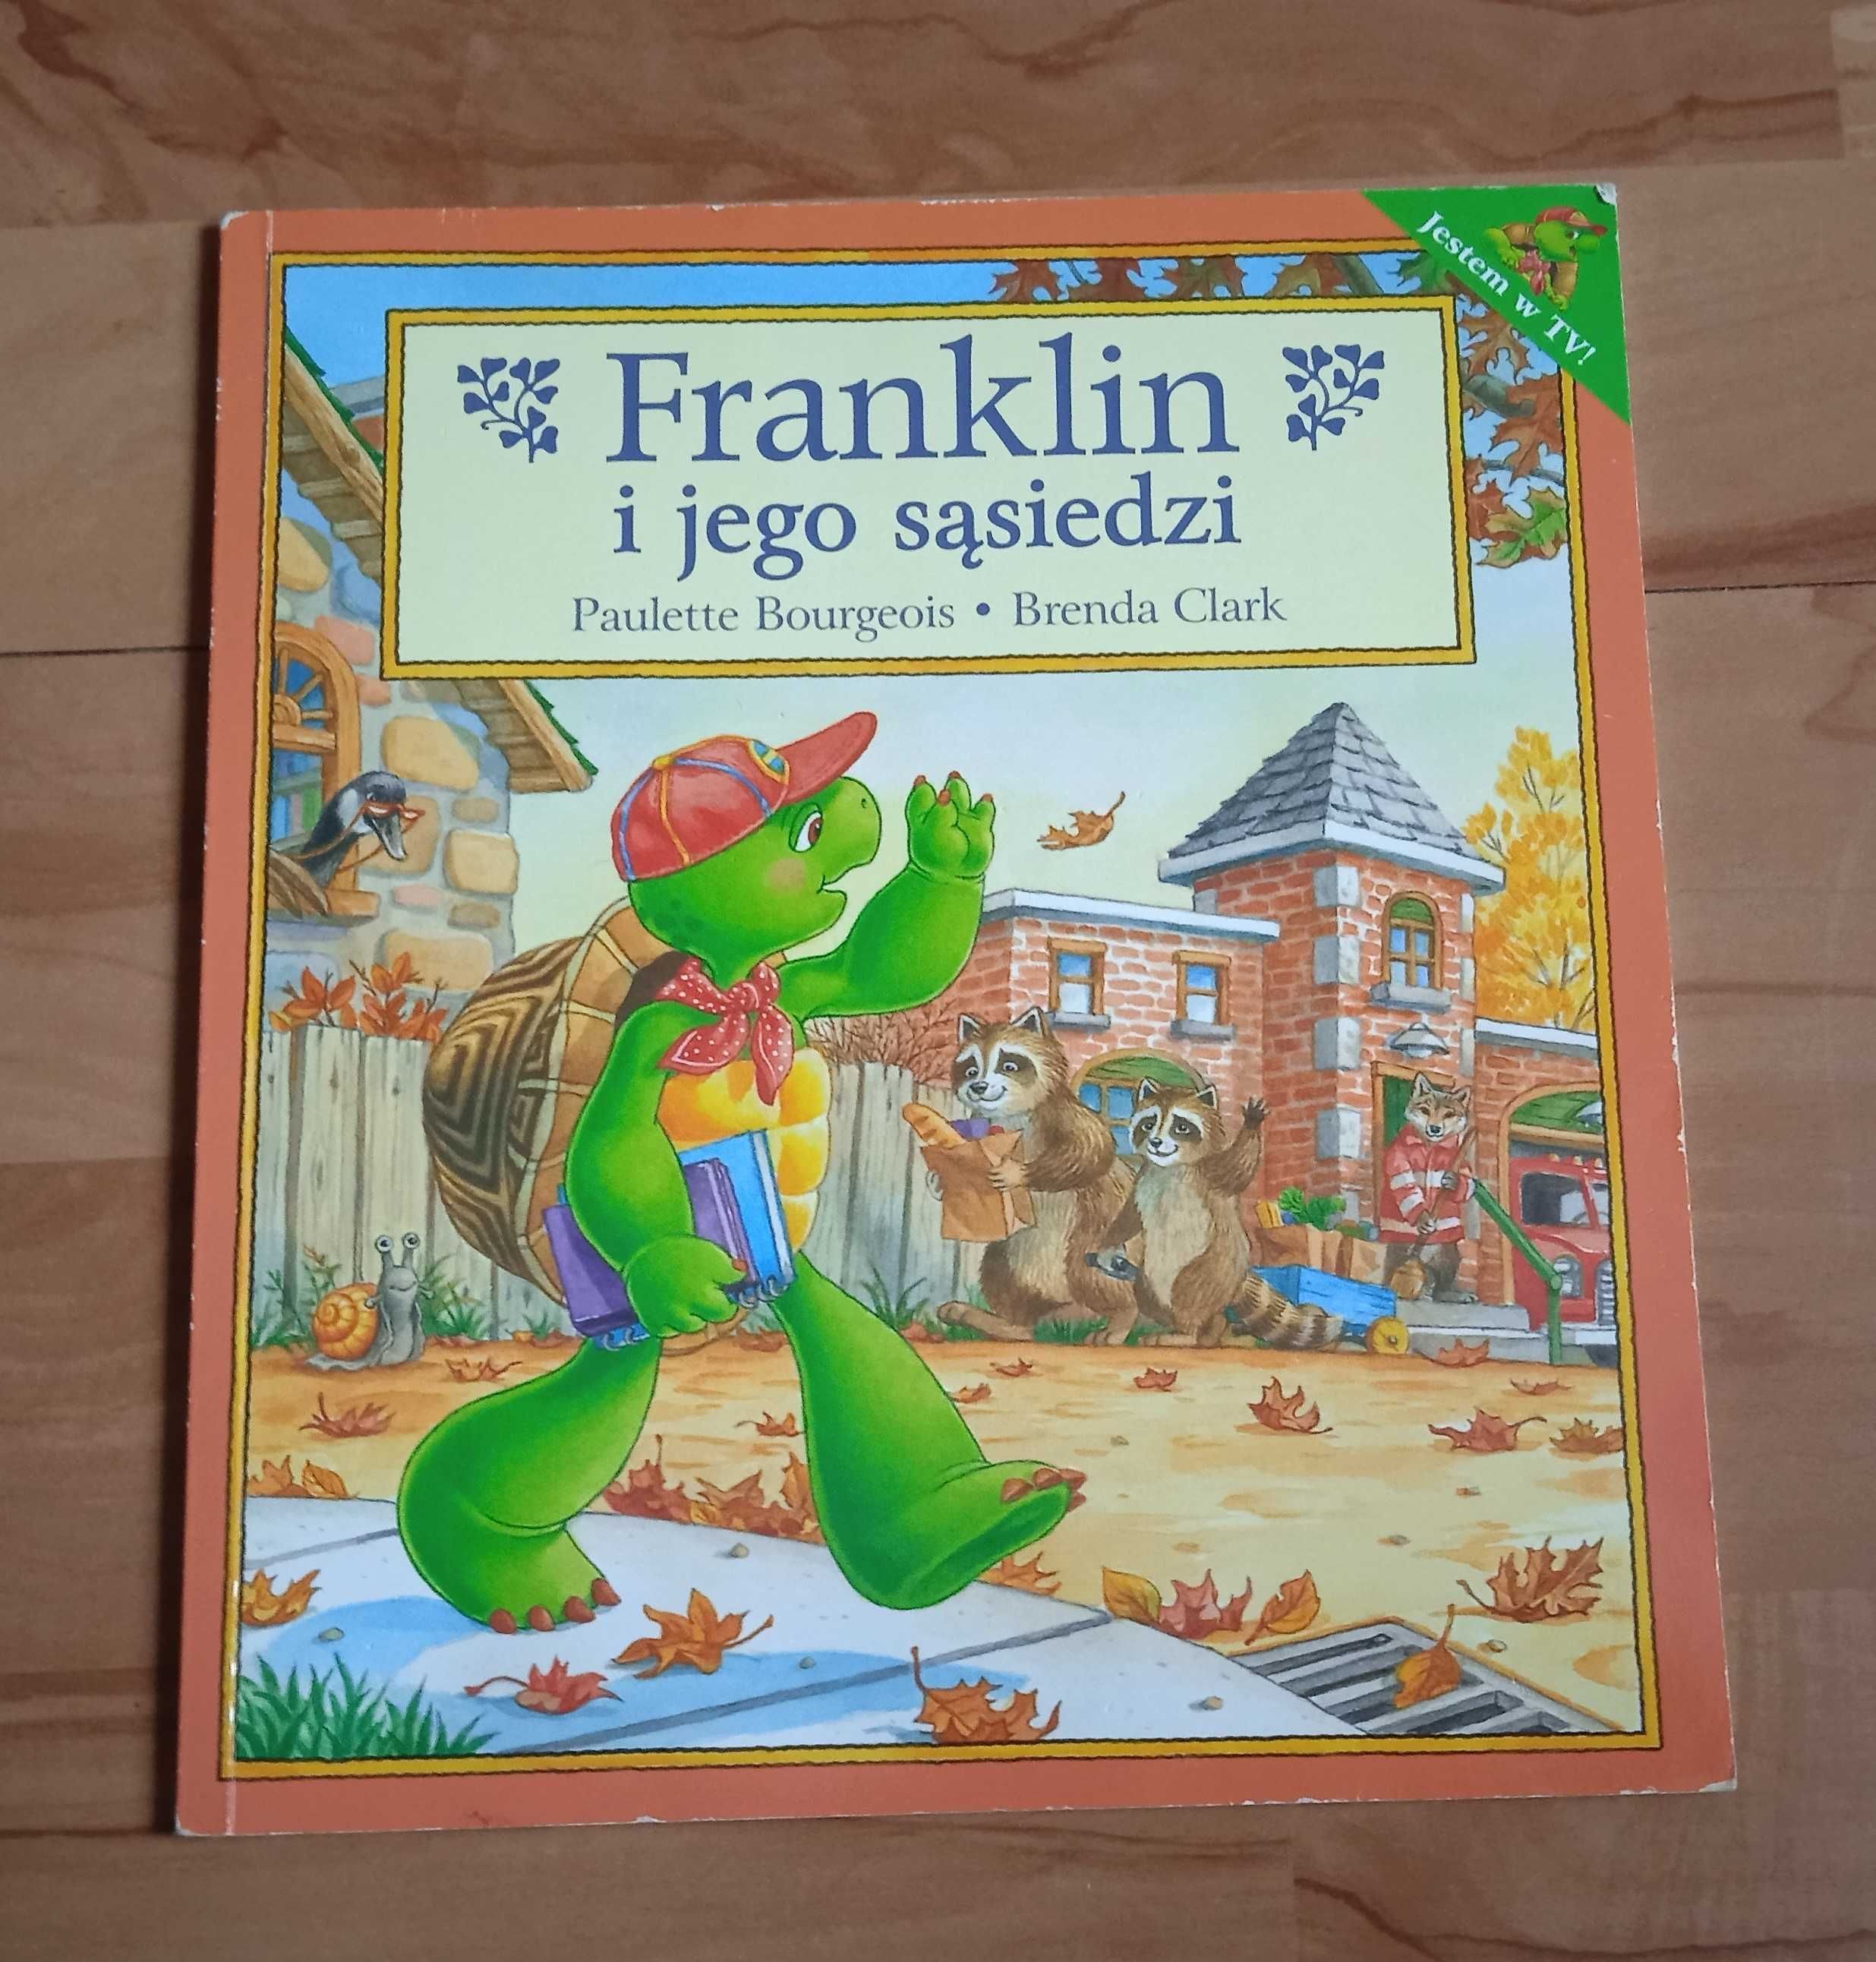 Franklin i jego sąsiedzi - książka dla dzieci